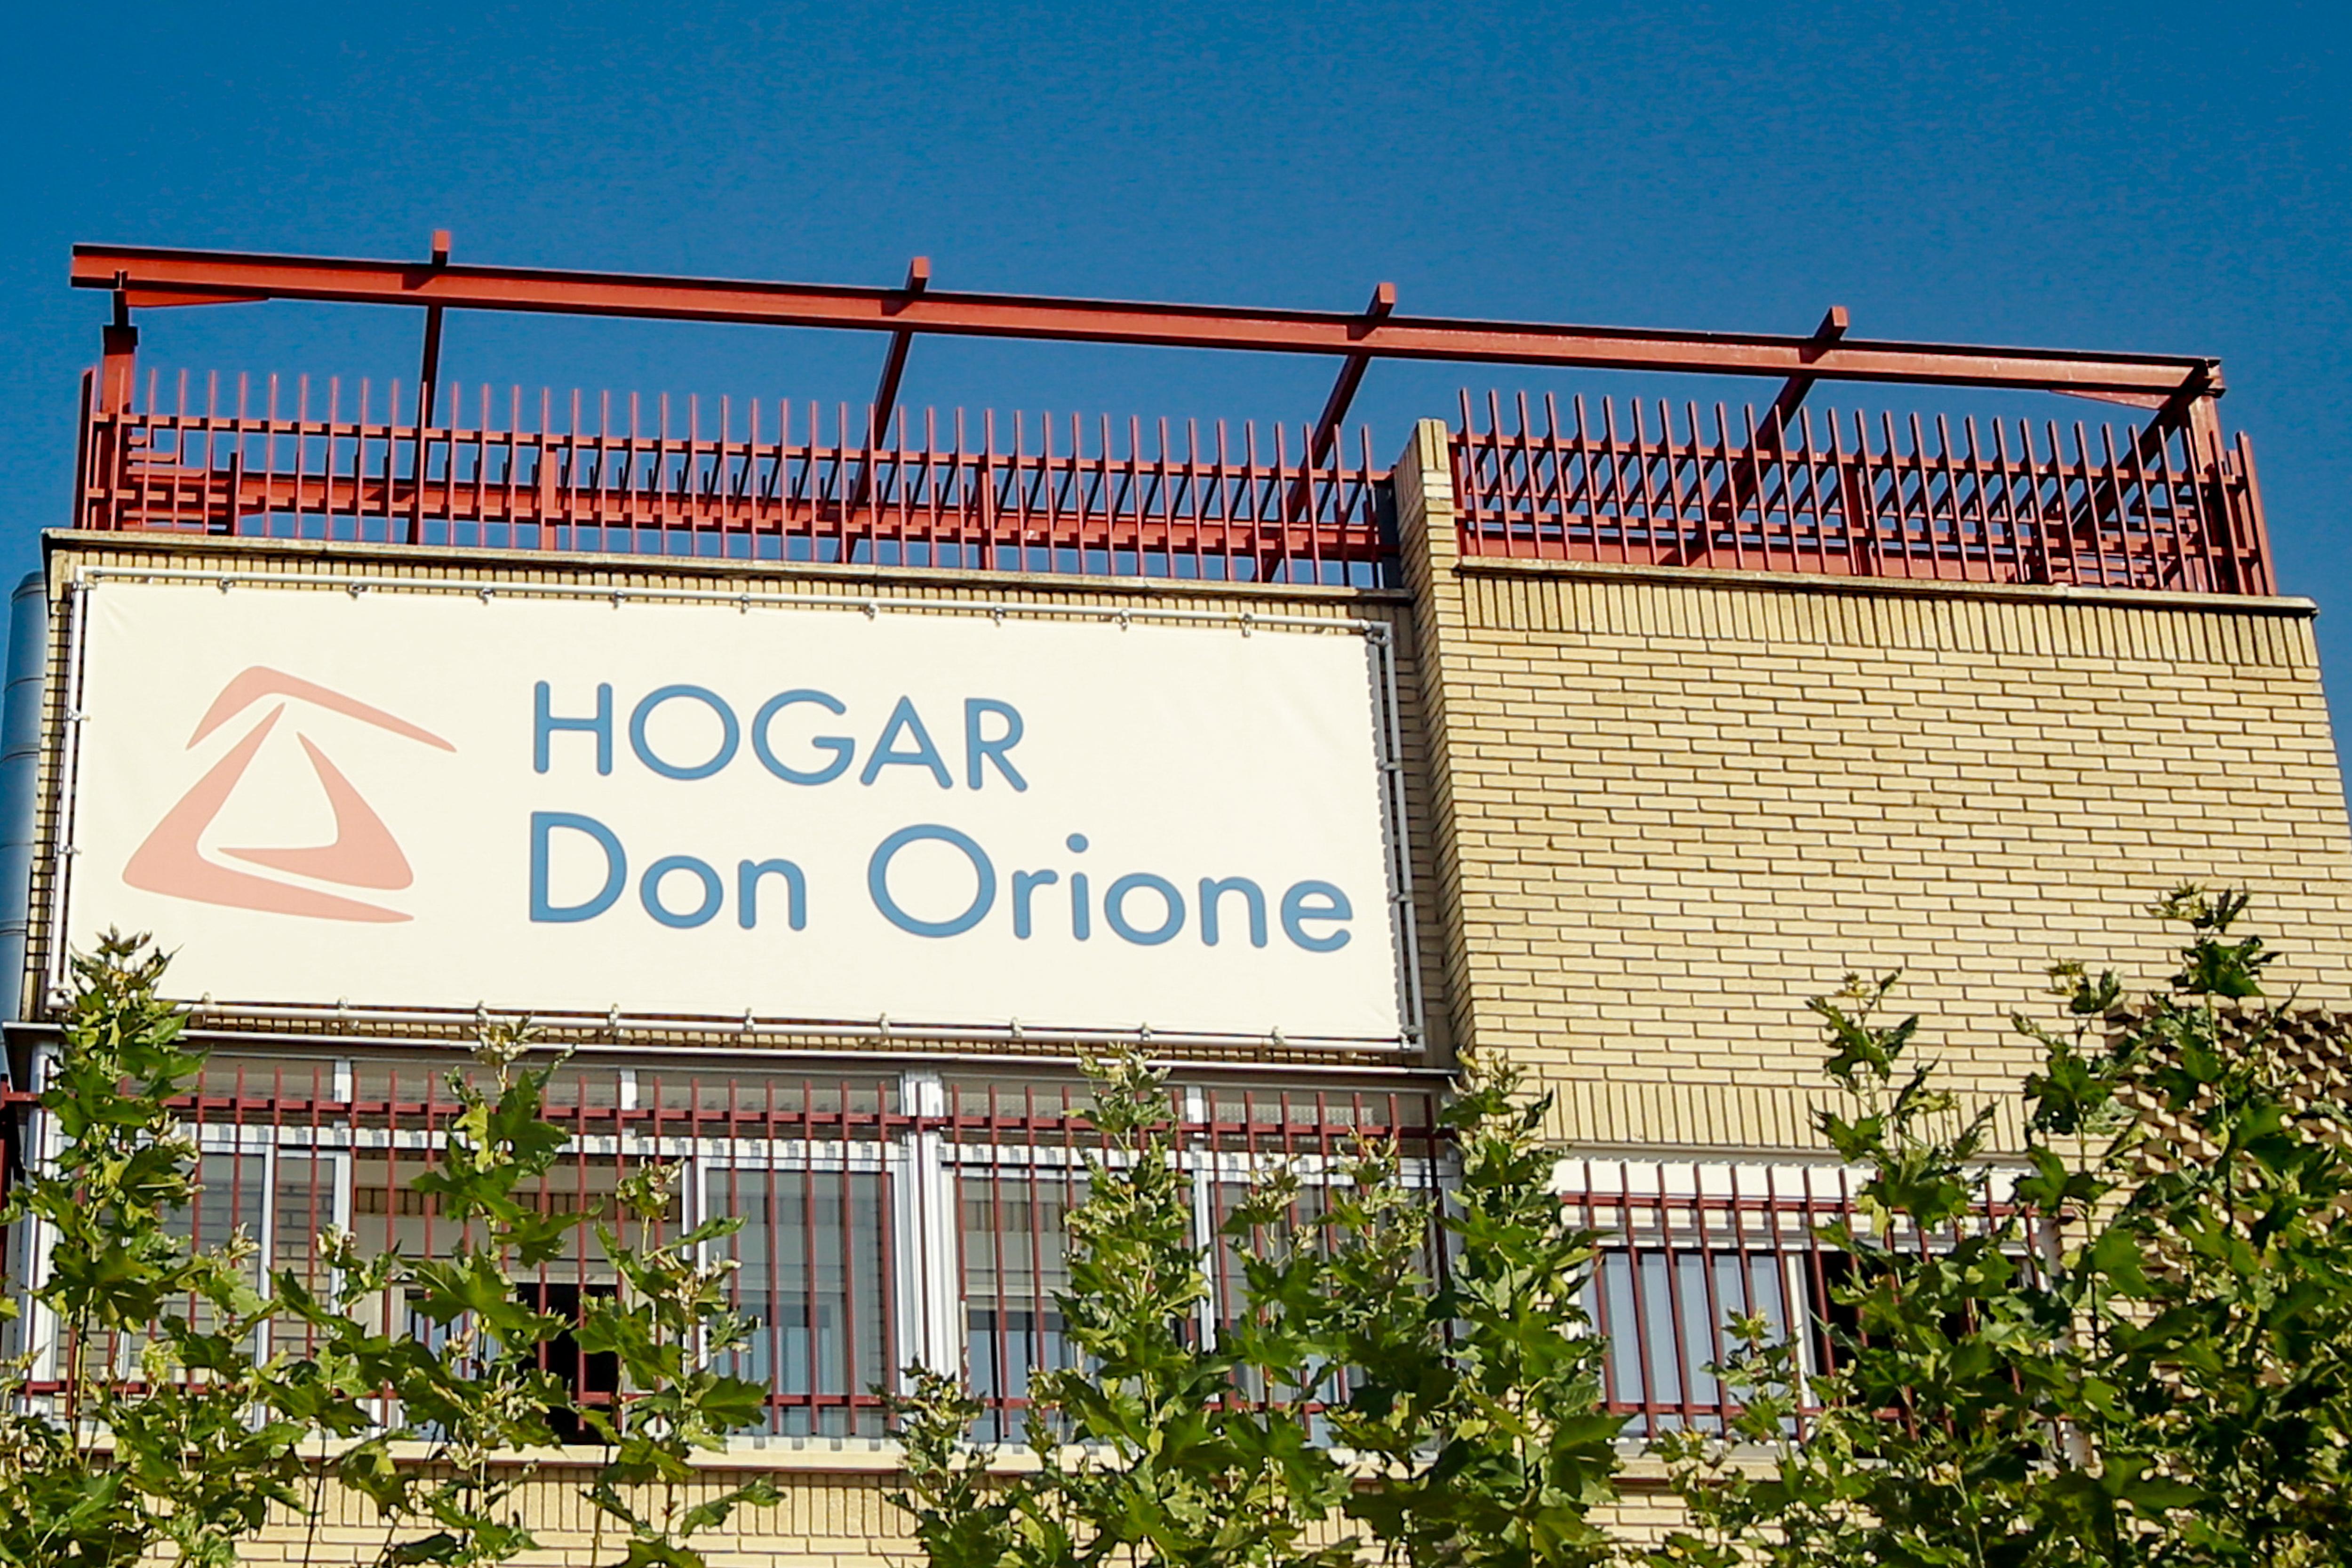 Edificio donde está ubicado el Hogar Don Orione el centro en Pozuelo (Madrid) dedicado a personas con discapacidad donde prestará voluntariado Iñaki Urdangarin a 18 de septiembre de 2019. EP